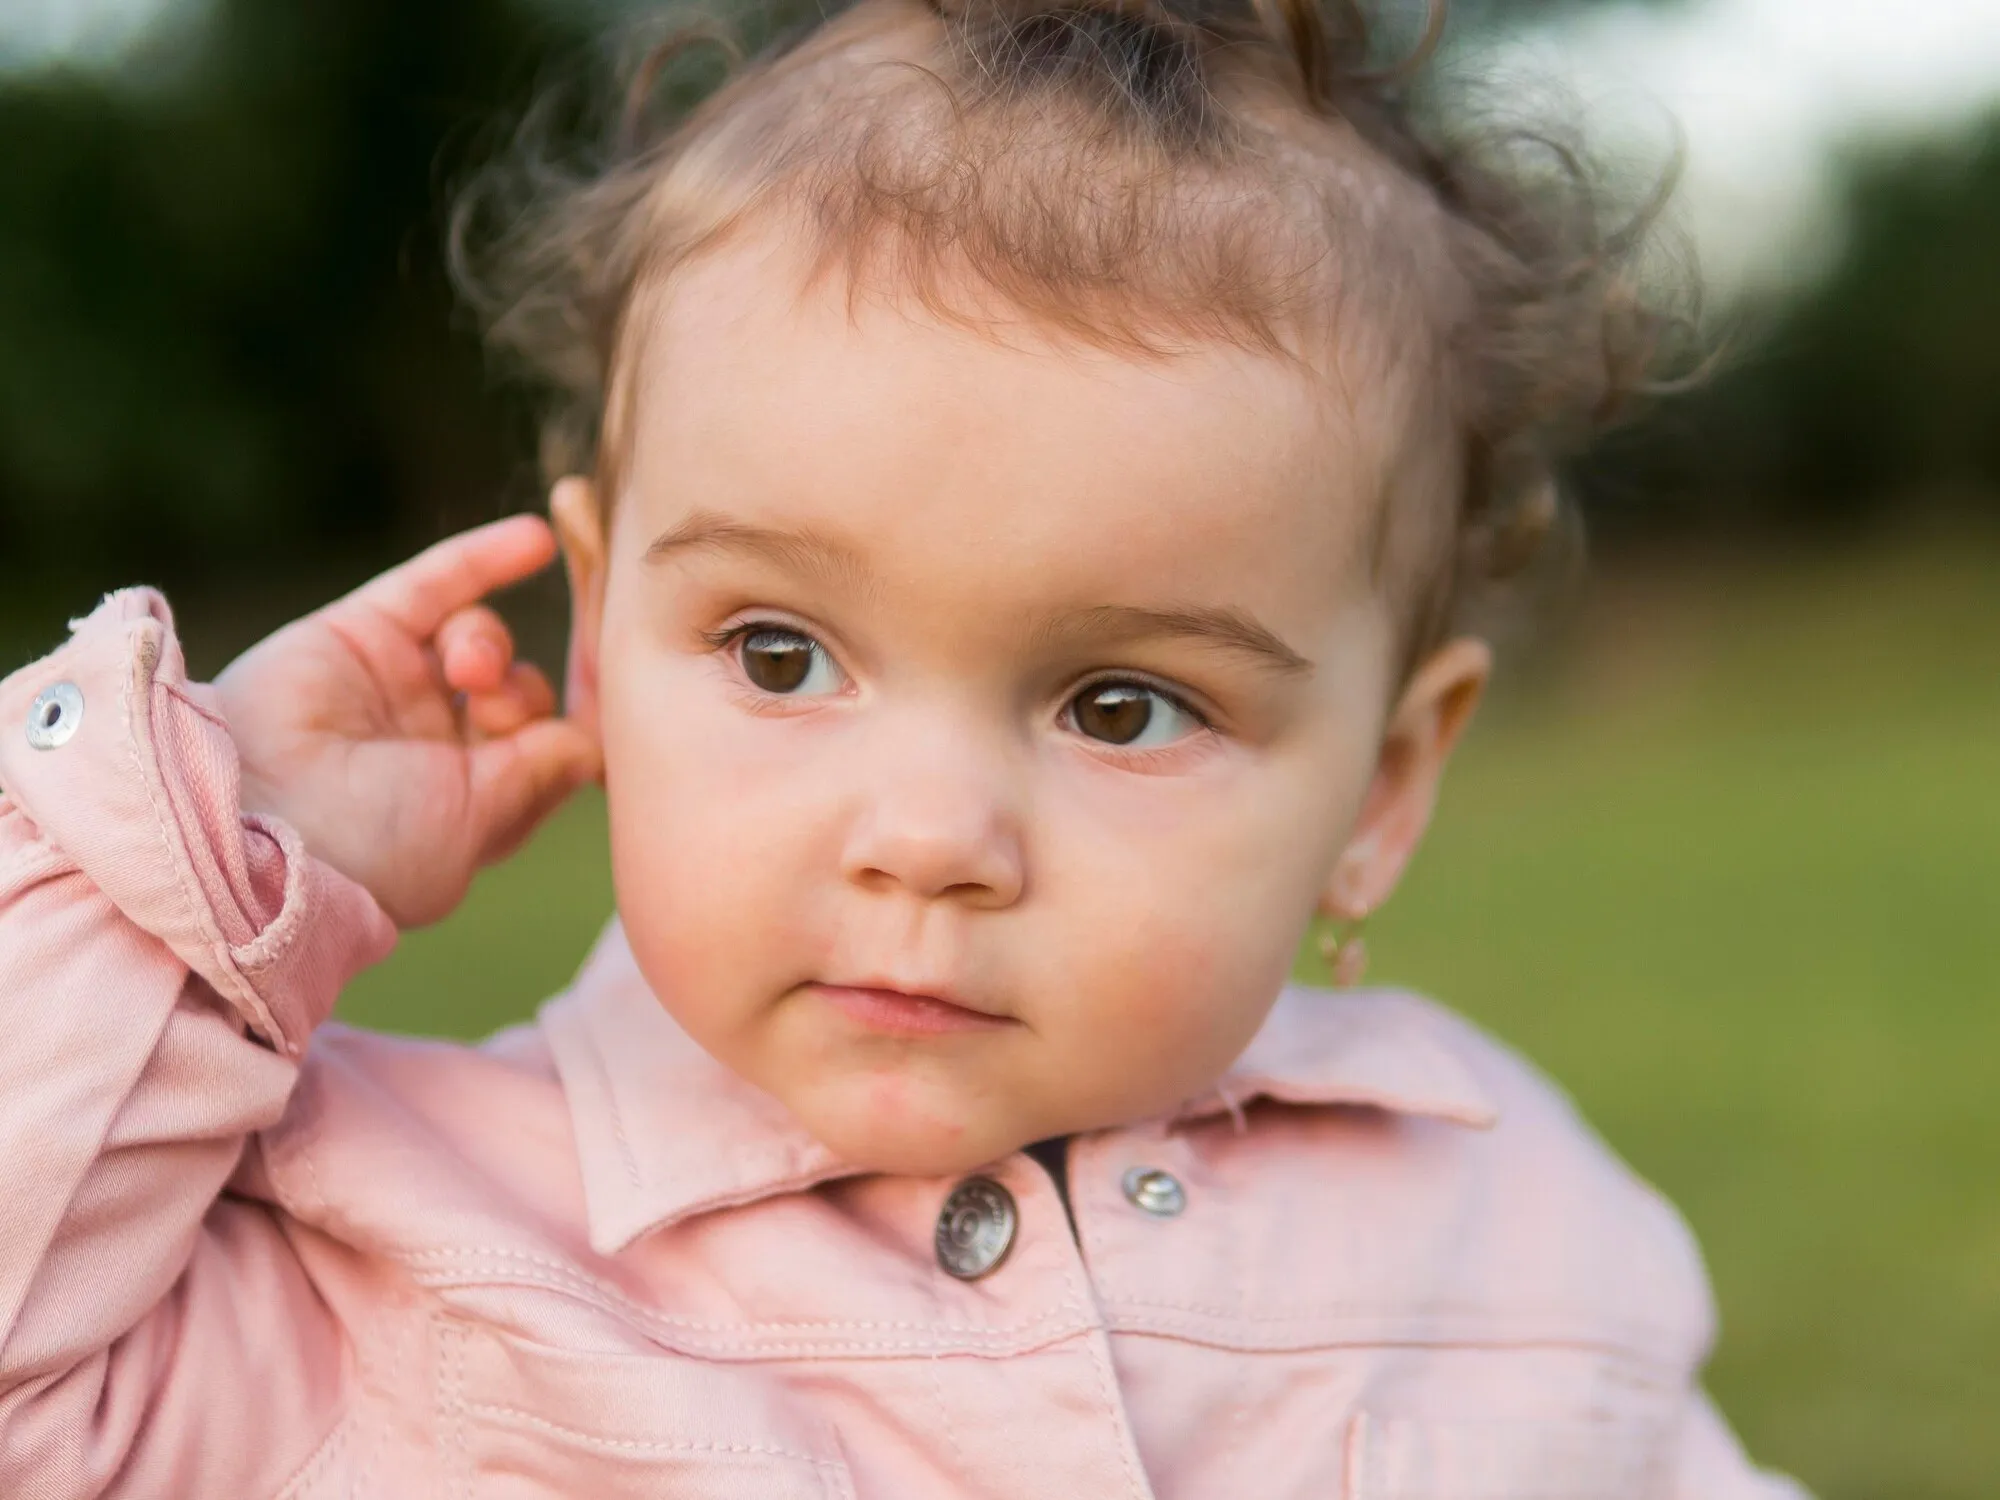 Педиатр объяснил родителям, до какого возраста детям нельзя прокалывать уши и почему